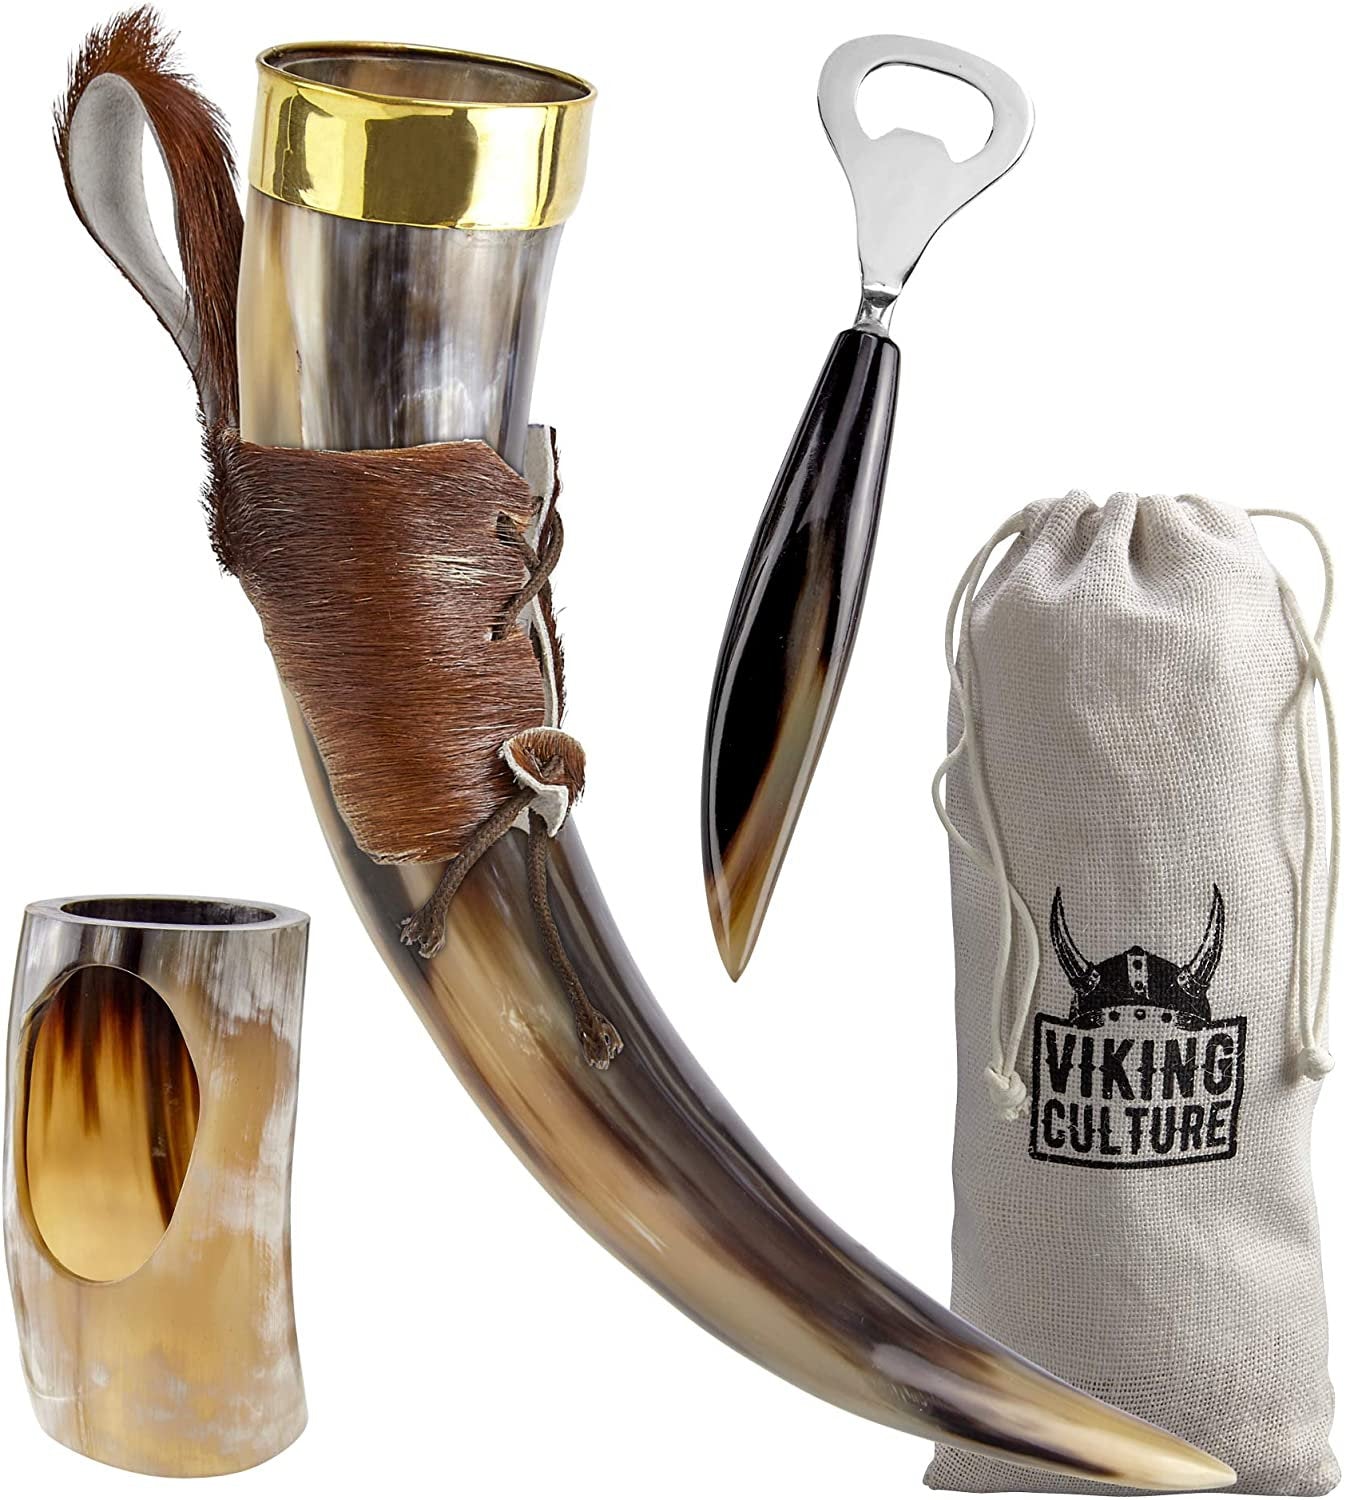 Viking Culture 16 oz. Viking Horn Mug with Beer Opener, Stand, Genuine Fur Belt Holster and Vintage Burlap Bag, Polished Finished